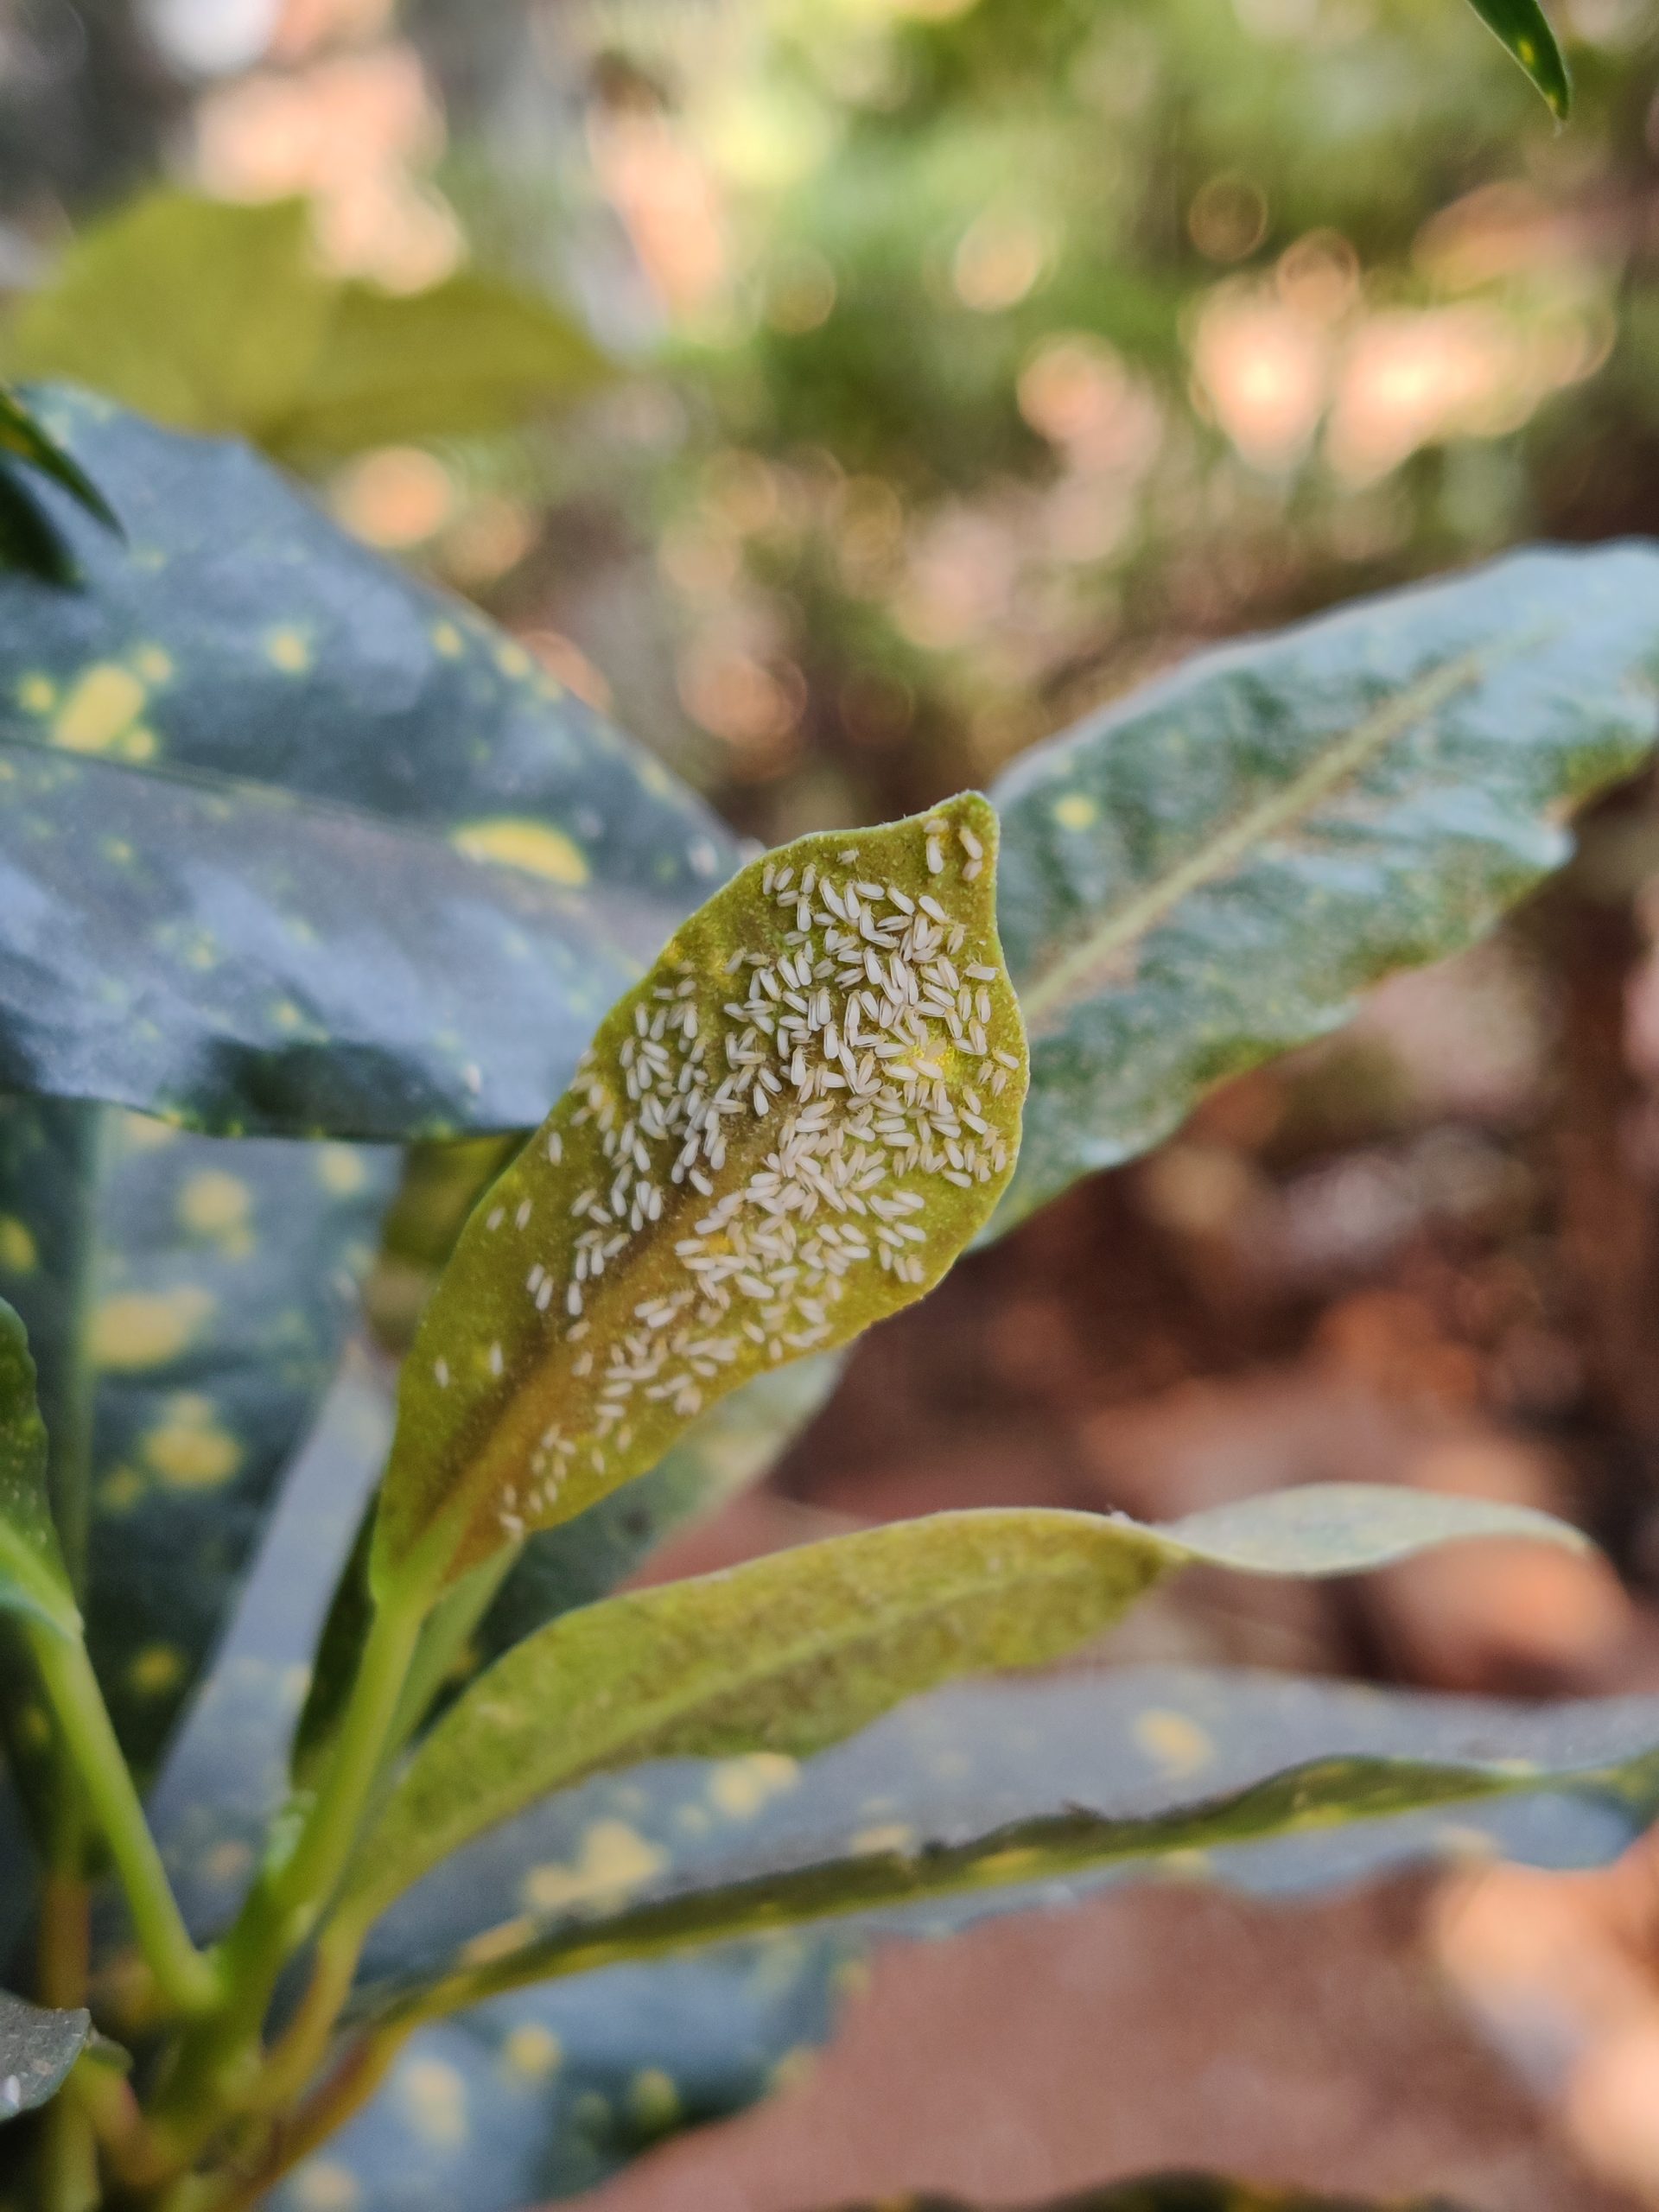 Pest colony on a leaf